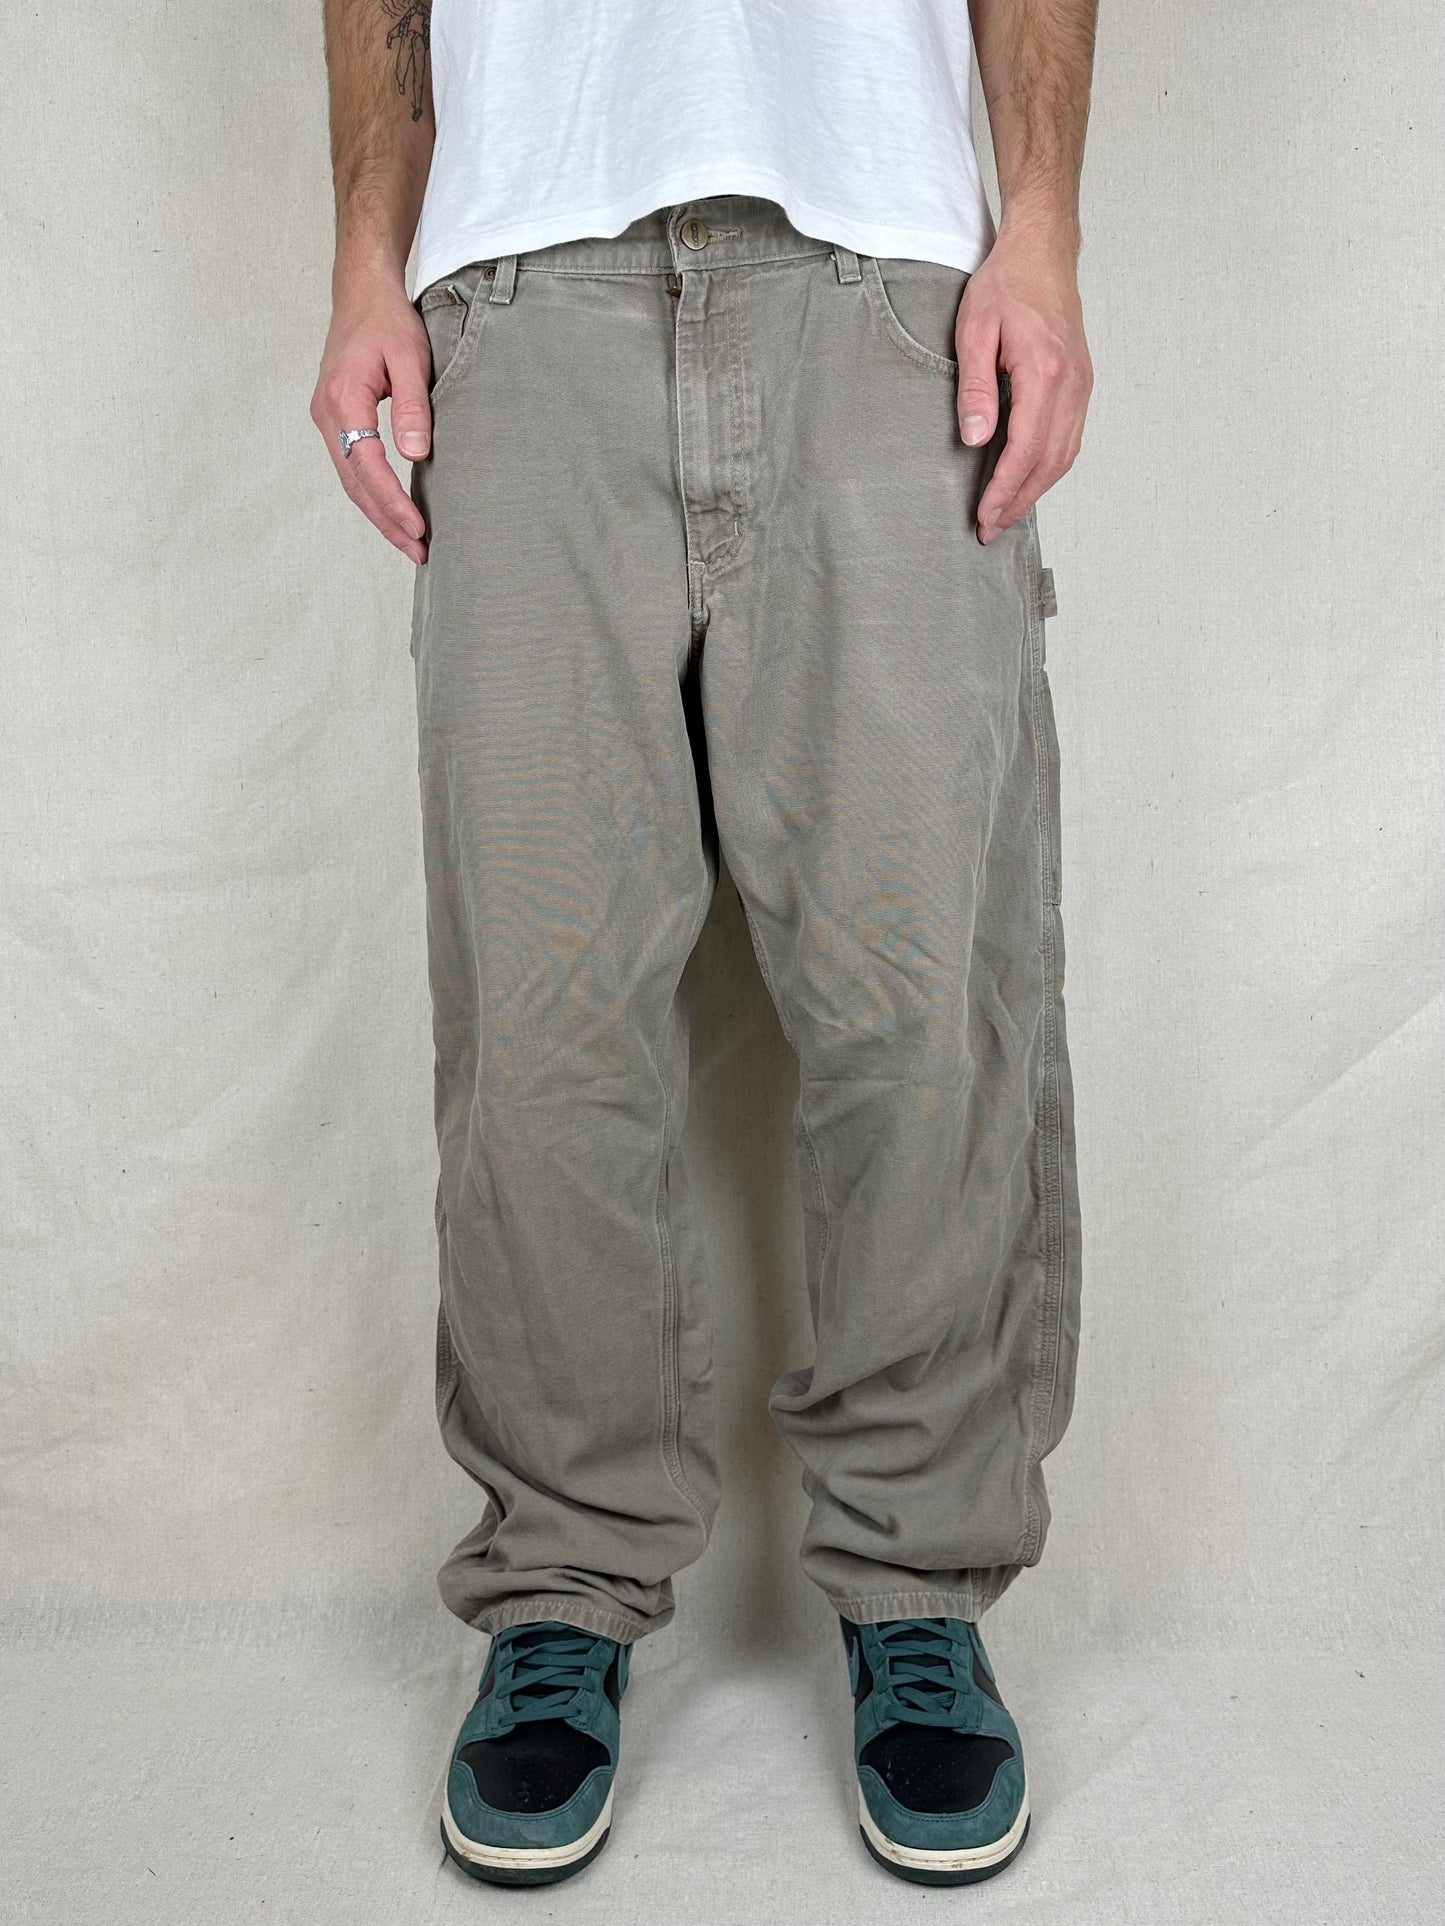 90's Carhartt Vintage Carpenter Pants Size 38x32